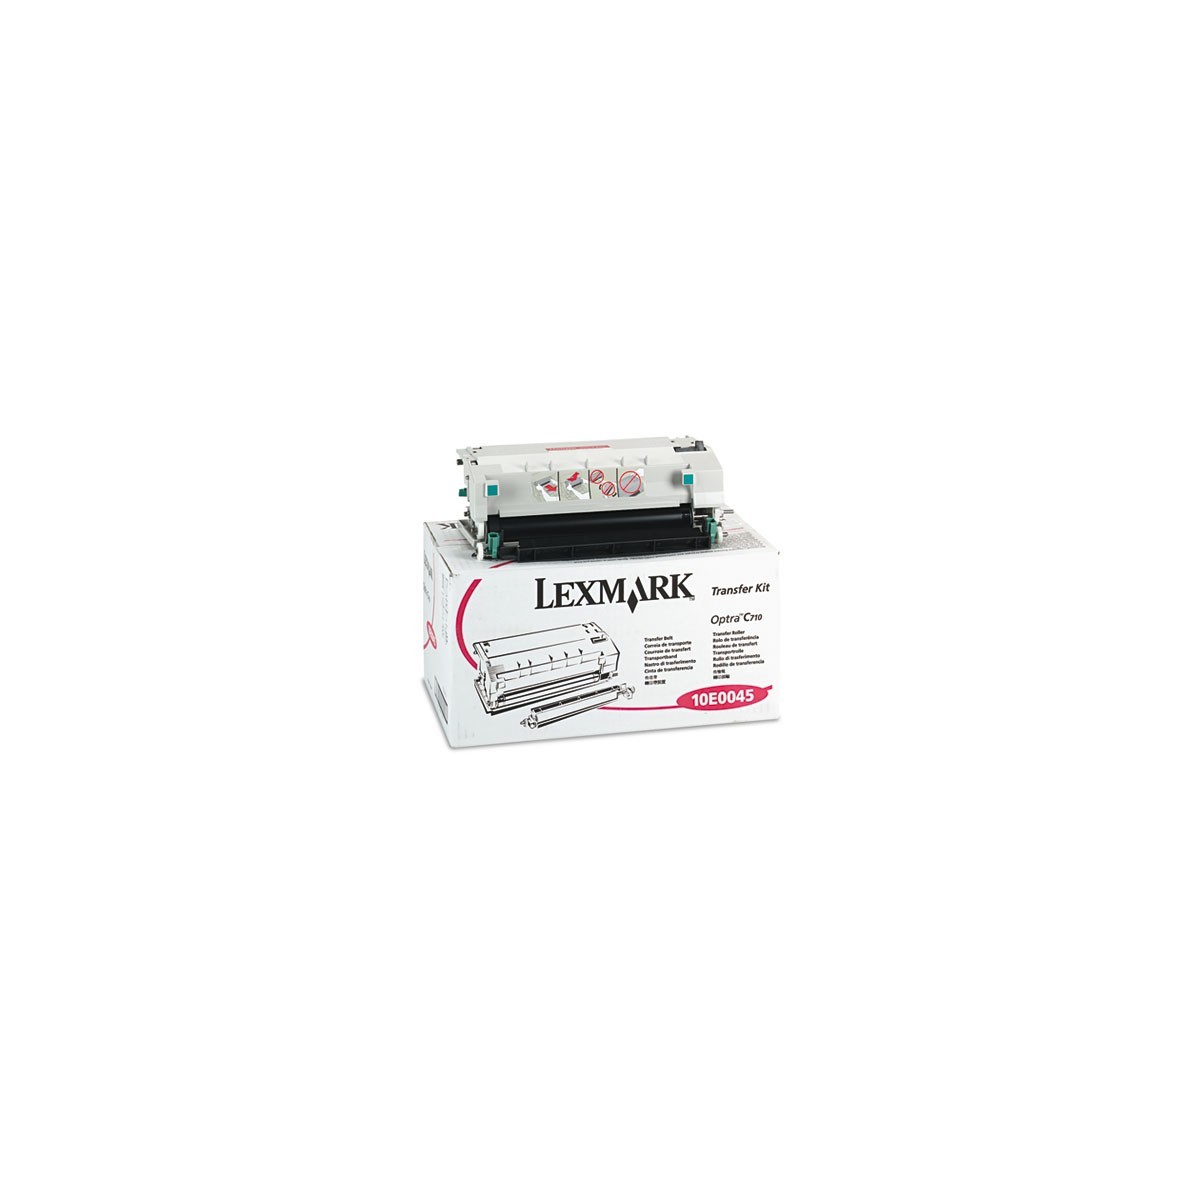 Lexmark 10E0045 - Printer transfer roller - 100000 pages - Laser - Optra C710